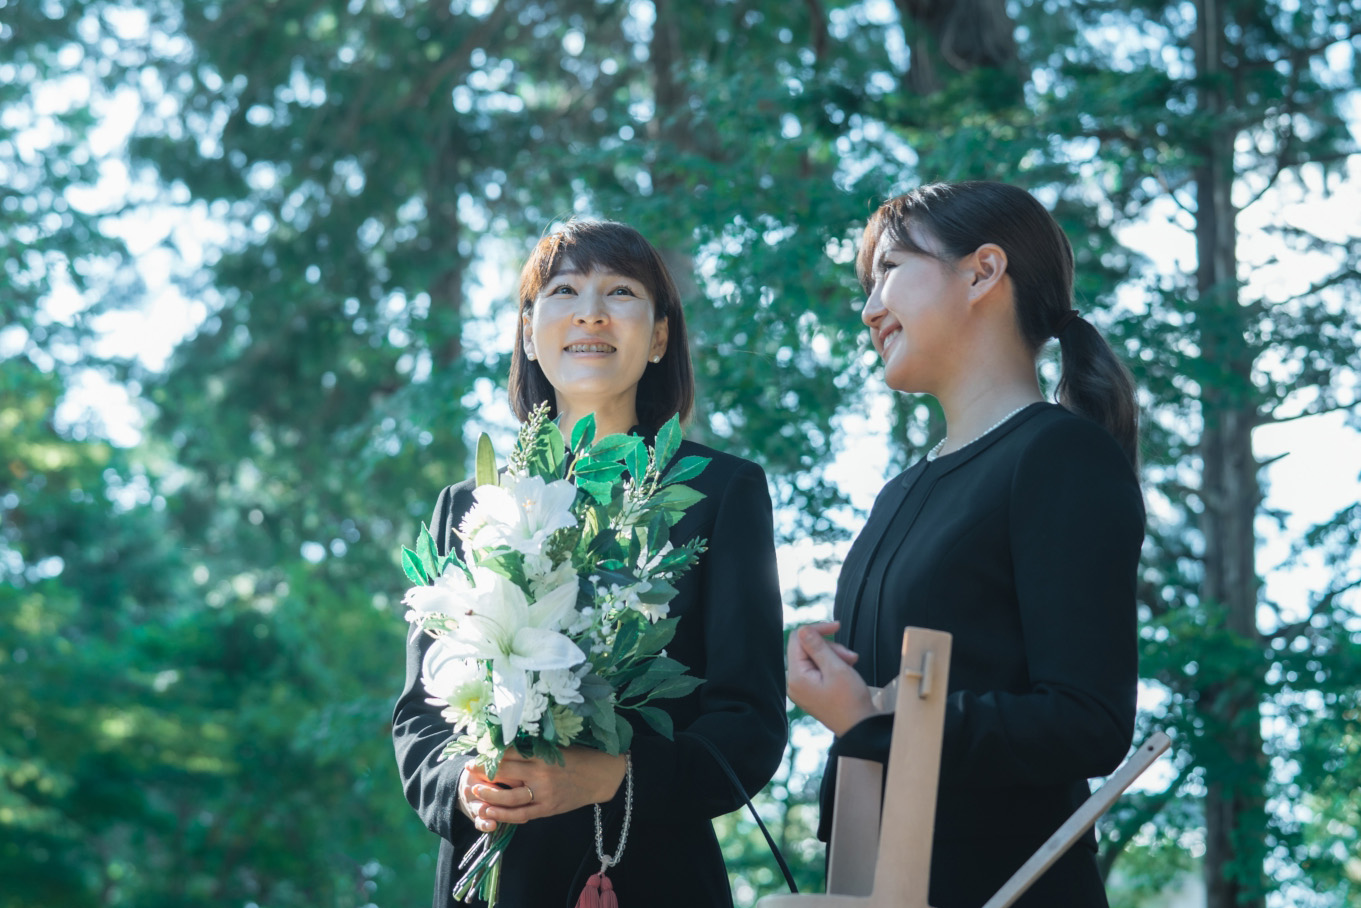 葬儀に列席している花束を抱えた女性